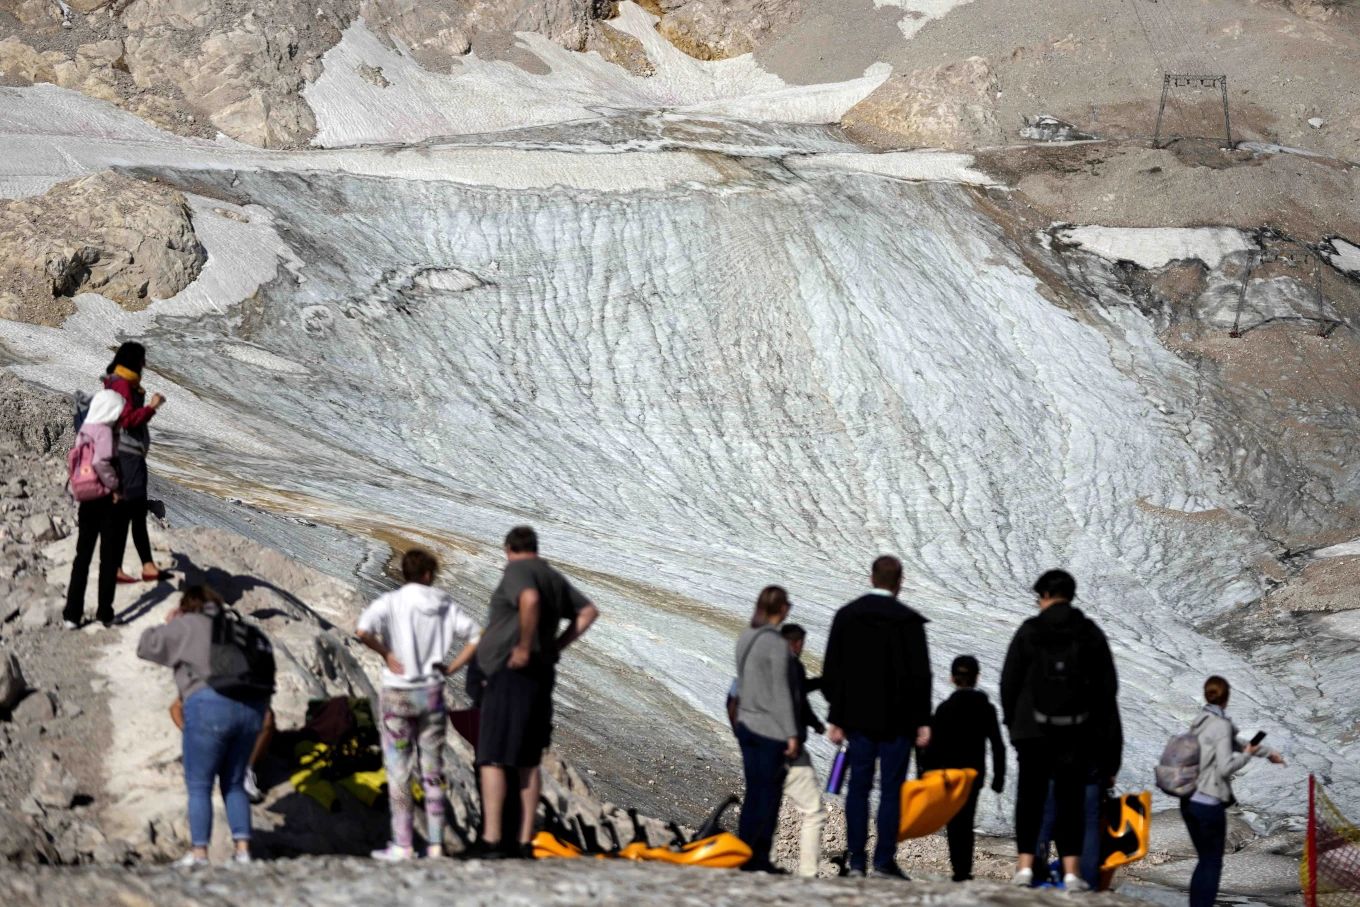 Turistas visitan el glaciar Shneeferner antes de que desaparezca. - Foto Matthias Schrader/AP